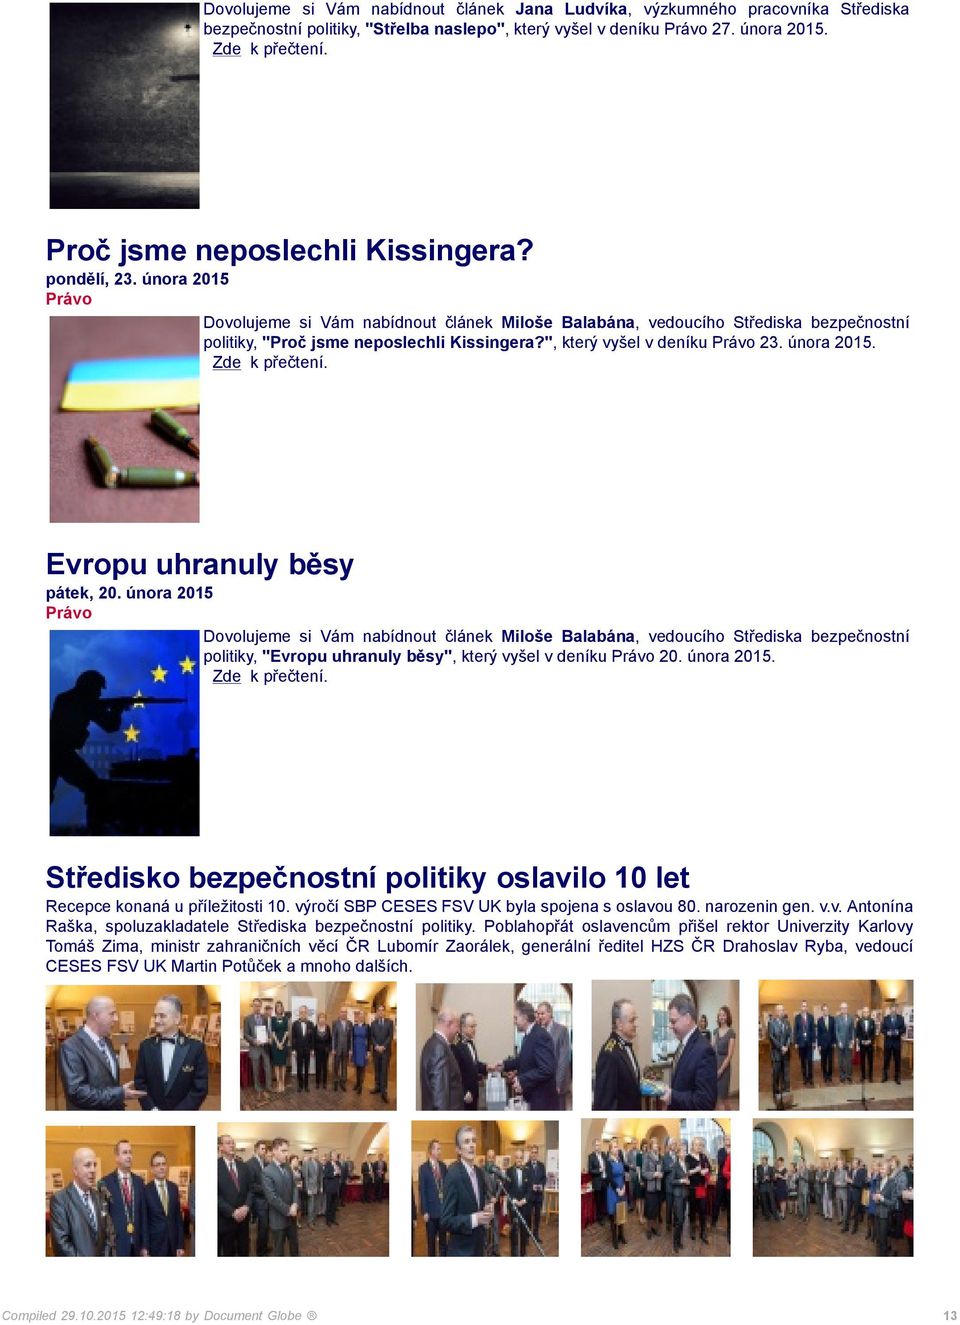 února 2015 politiky, "Evropu uhranuly běsy", který vyšel v deníku 20. února 2015. Středisko bezpečnostní politiky oslavilo 10 let Recepce konaná u příležitosti 10.